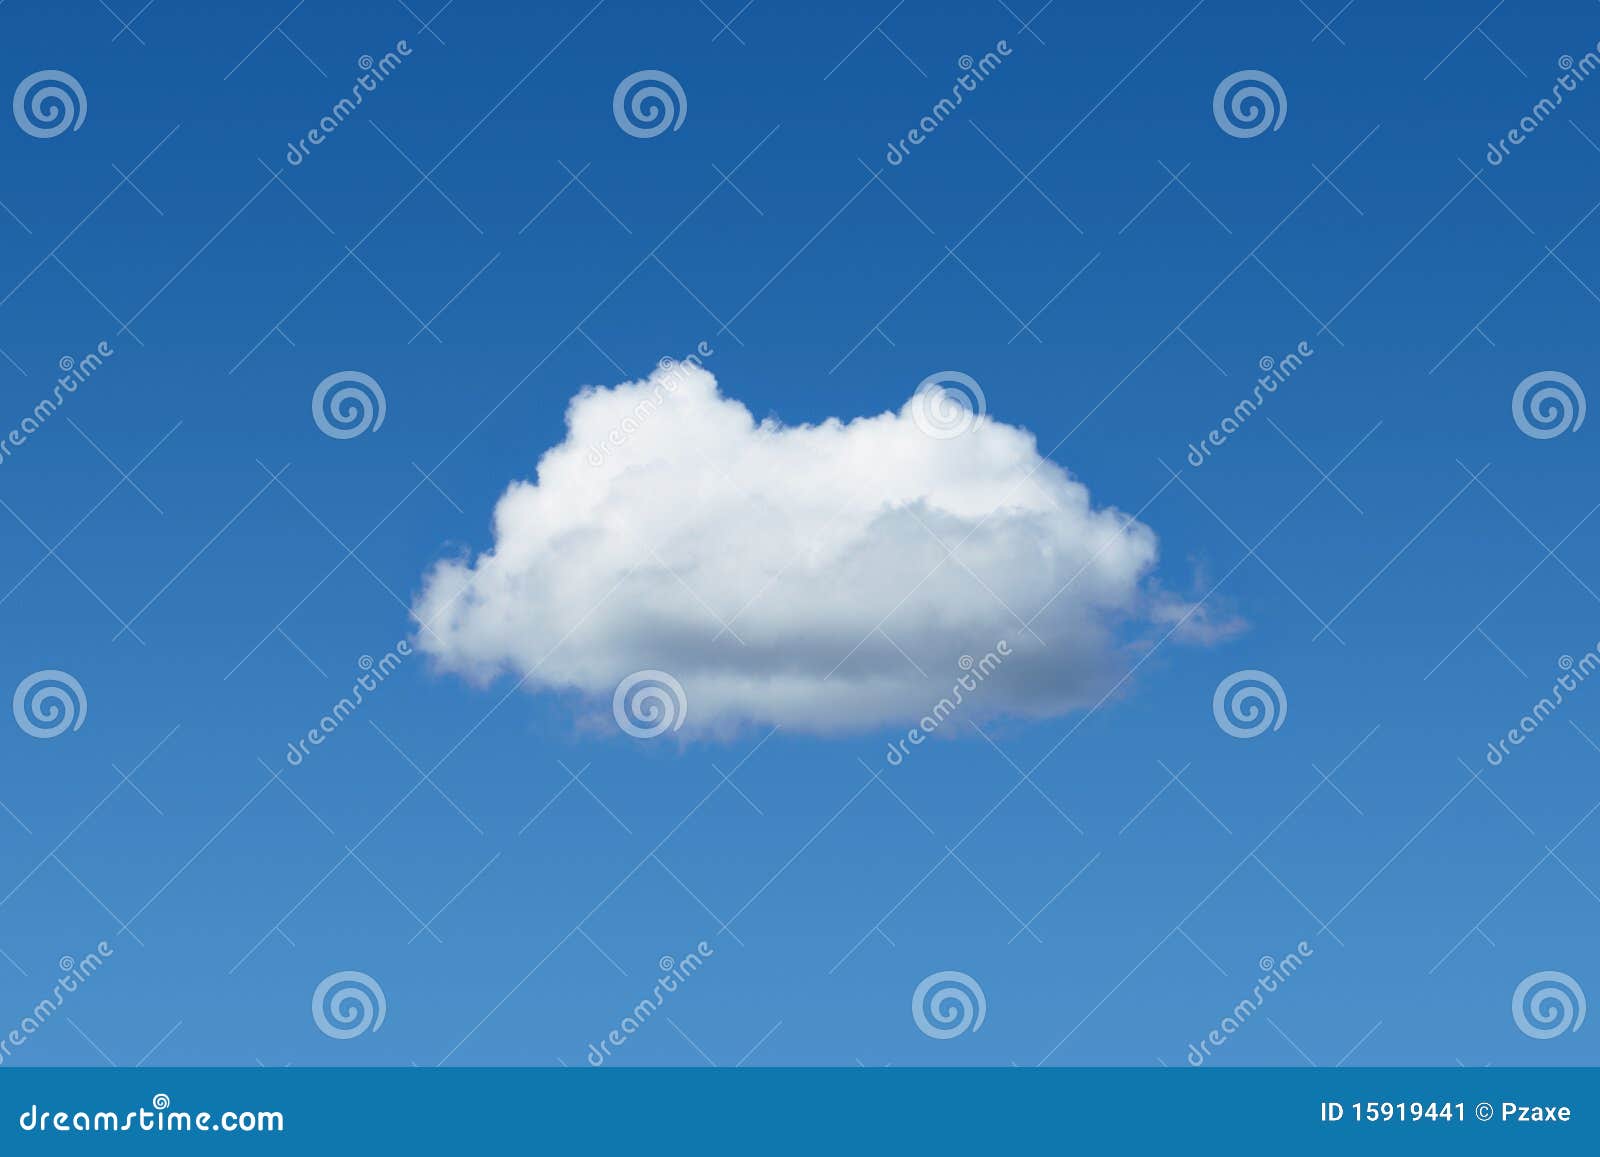 По синему небу тарелка плывет отгадай. Одинокое облако в небе. Маленькие облака. Небо с облачками. Маленькие облака на небе.